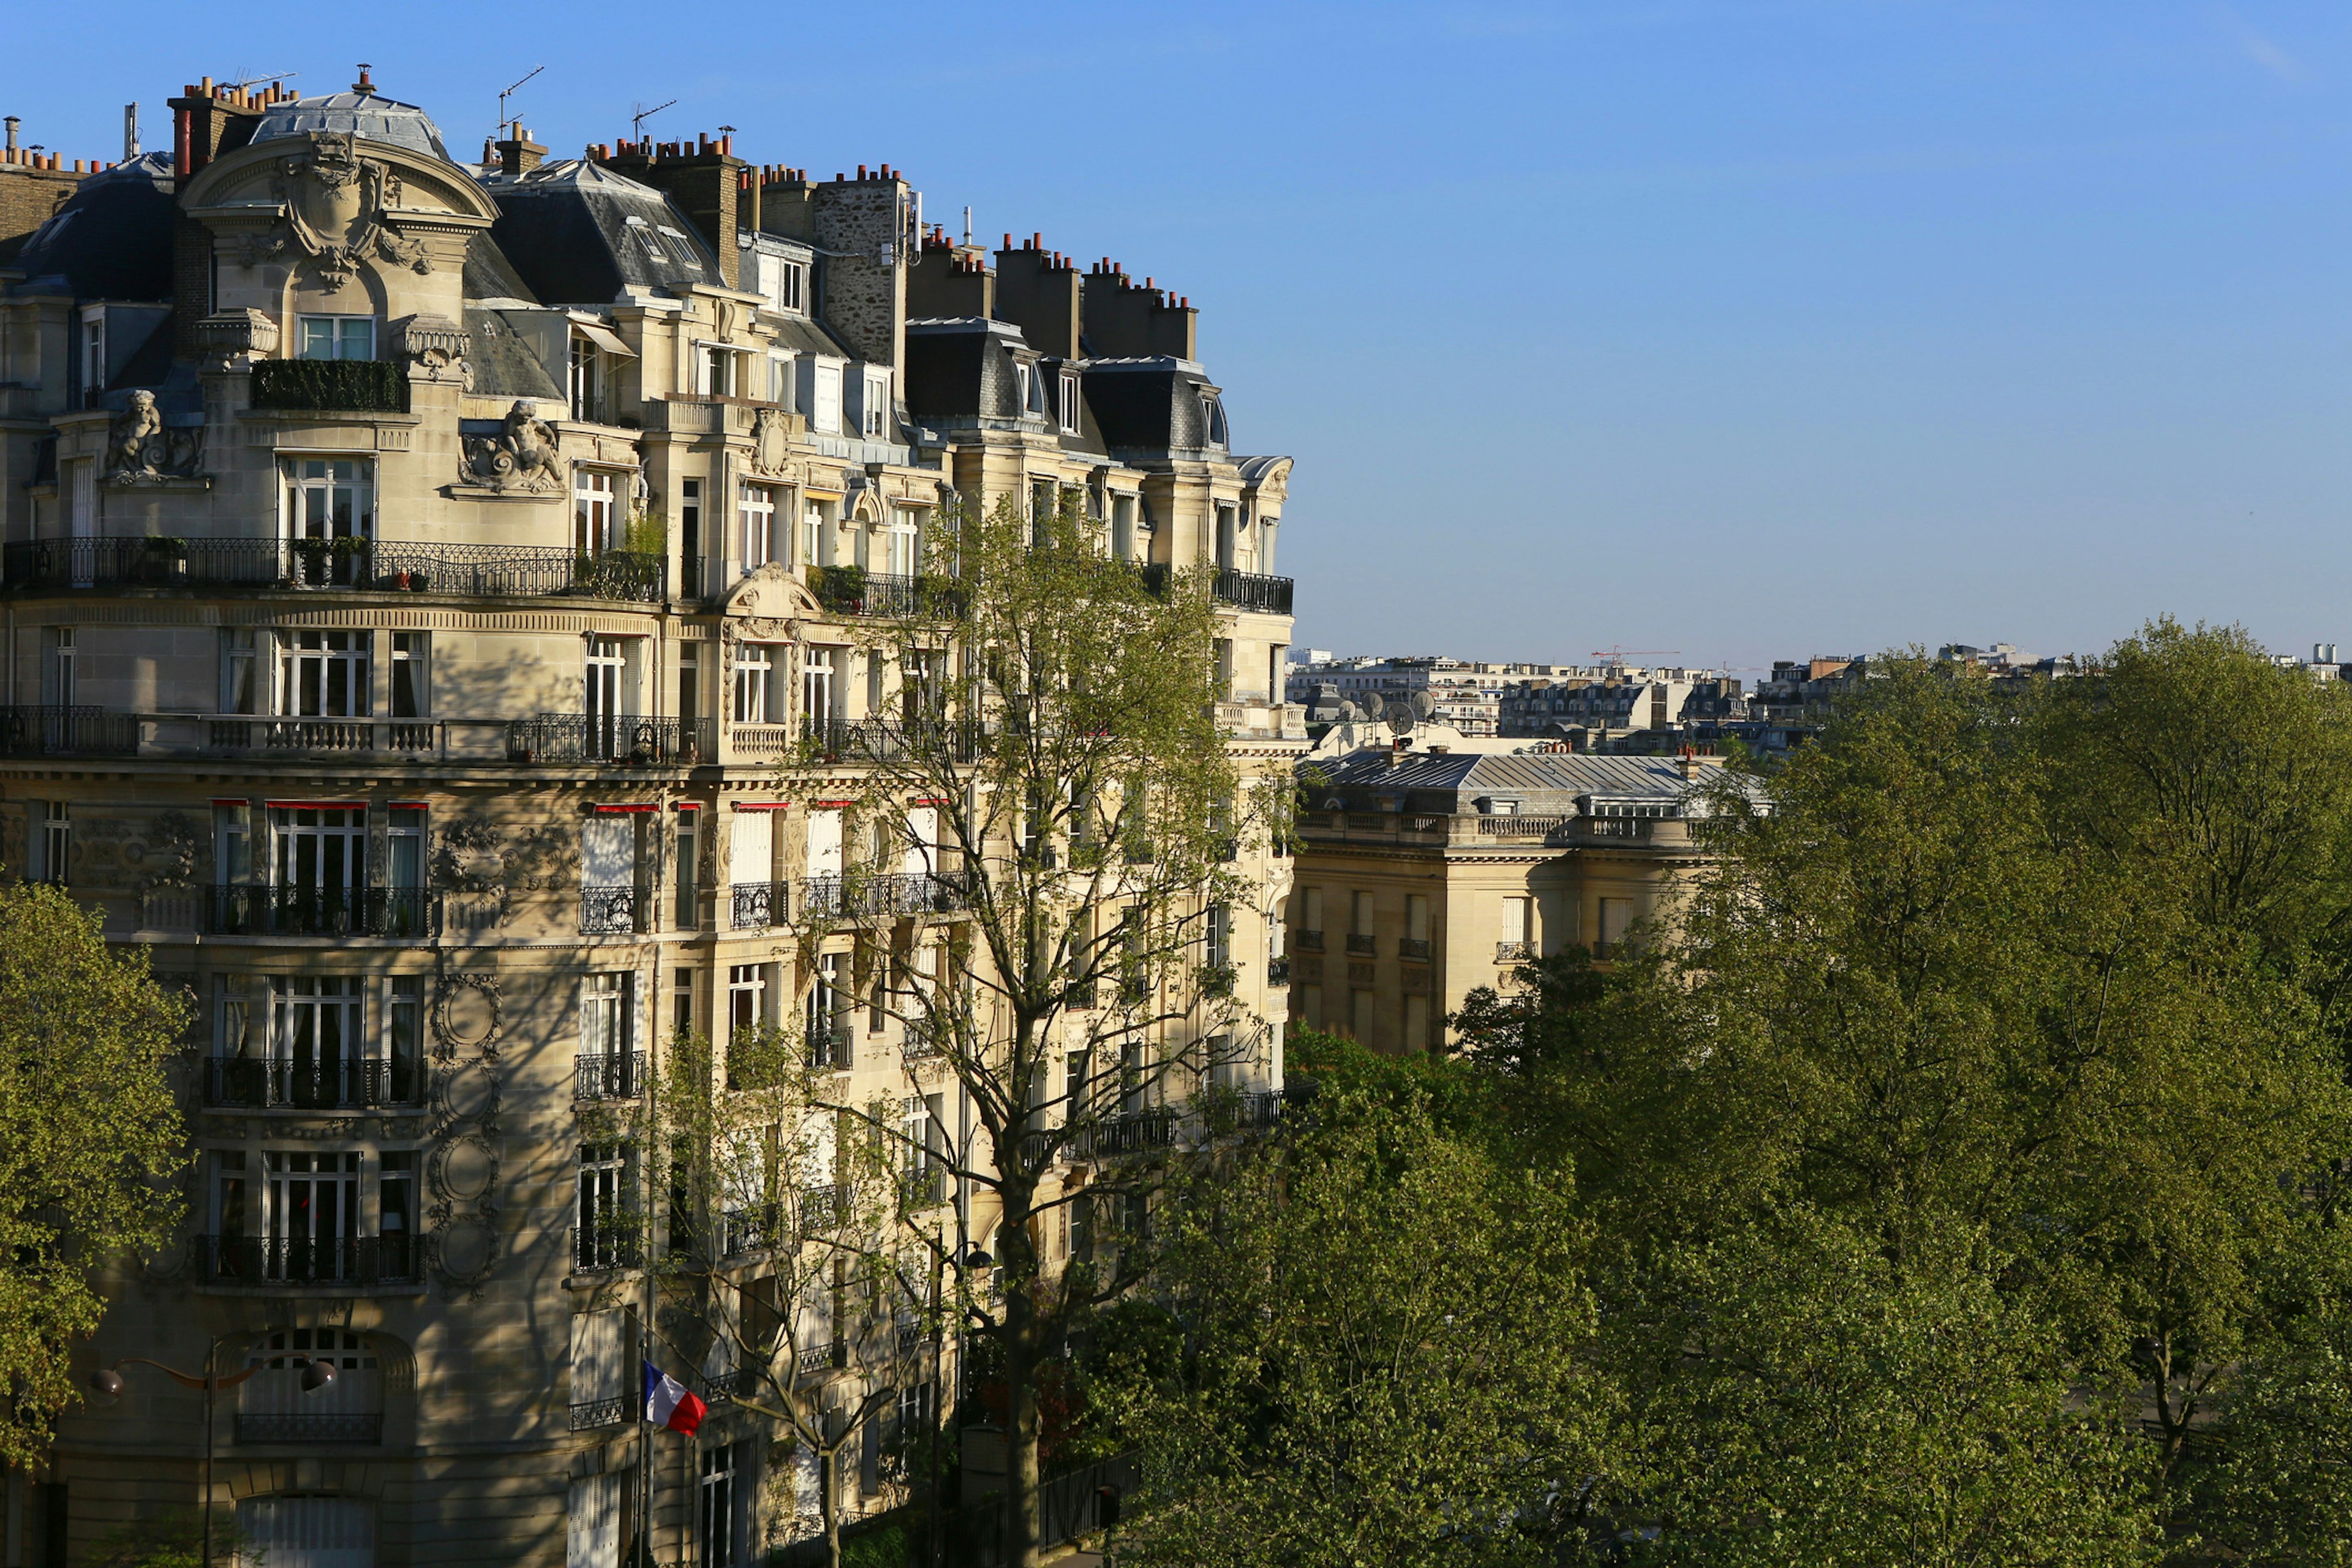 classic apartment buildings in the chic seventh arrondissement of Paris